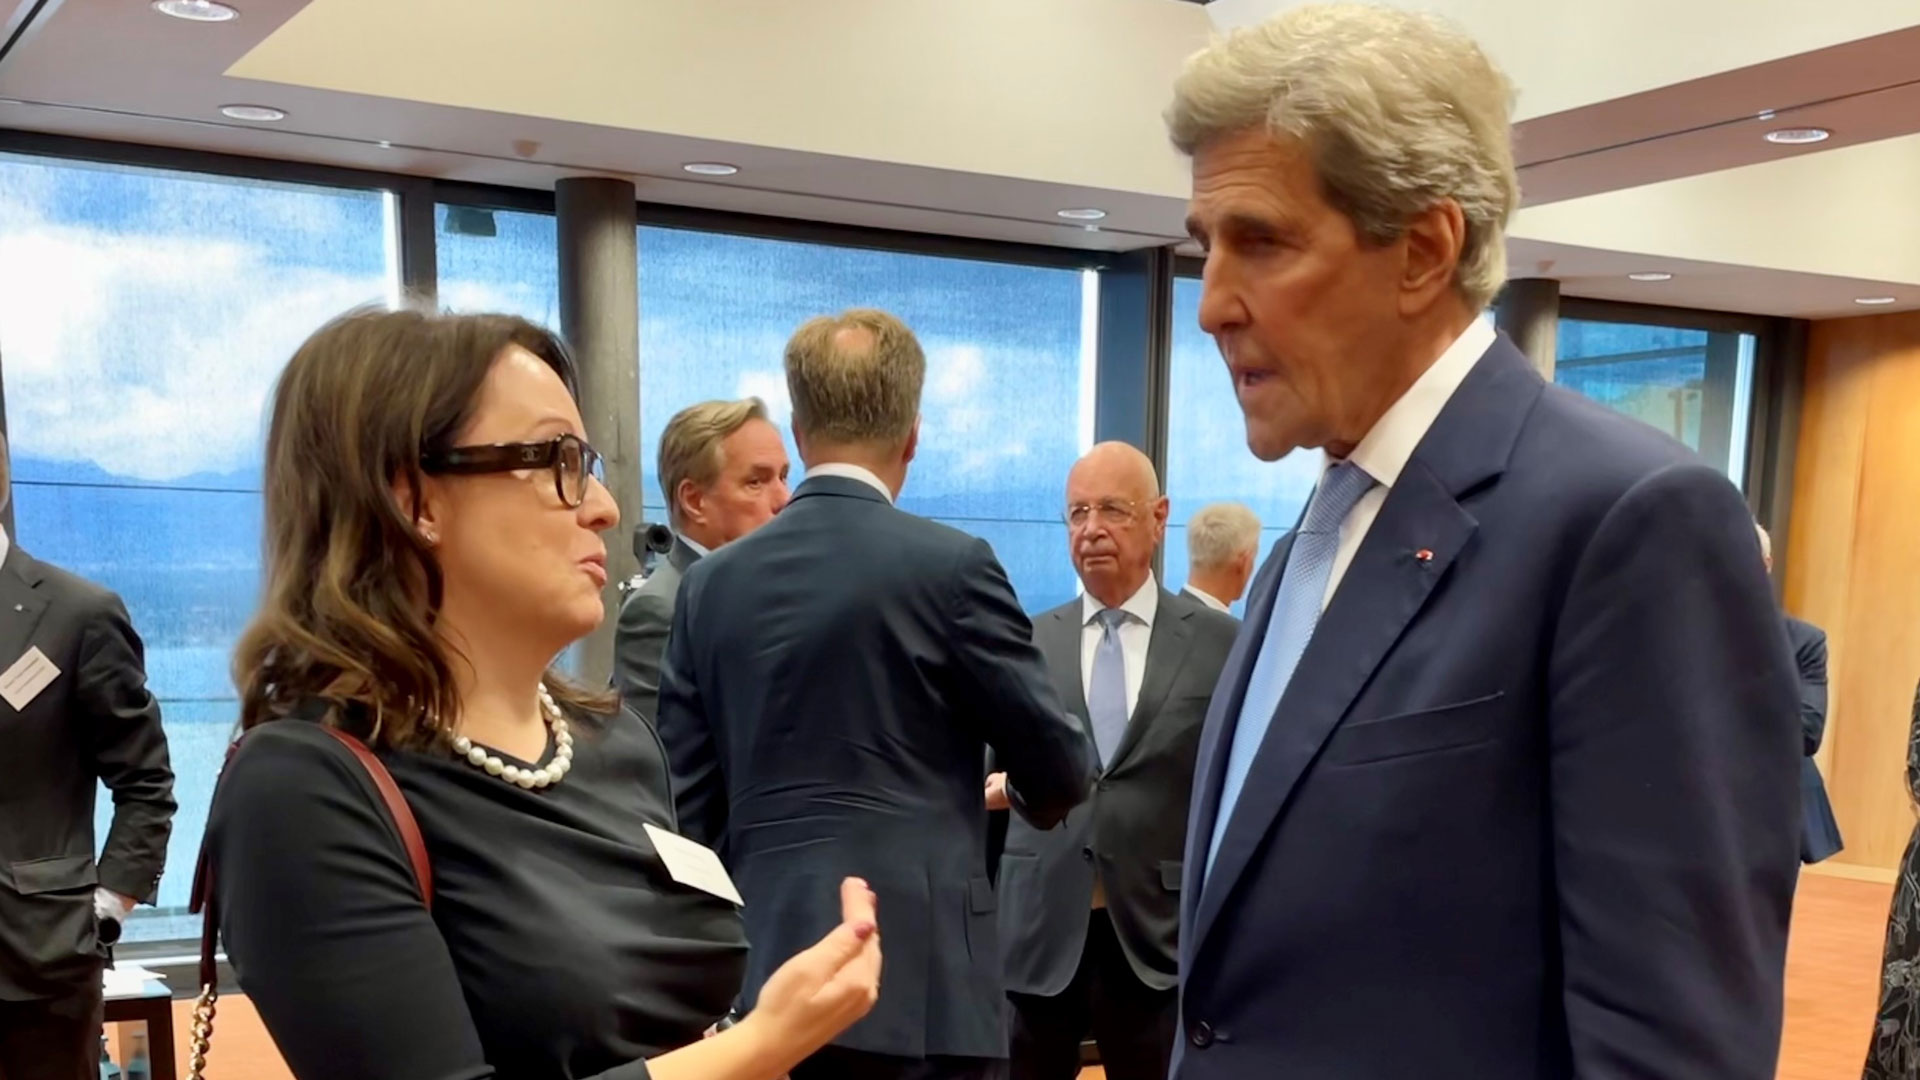 CEO Anna Borg und US-Klimabeauftragter John Kerry im Gespräch